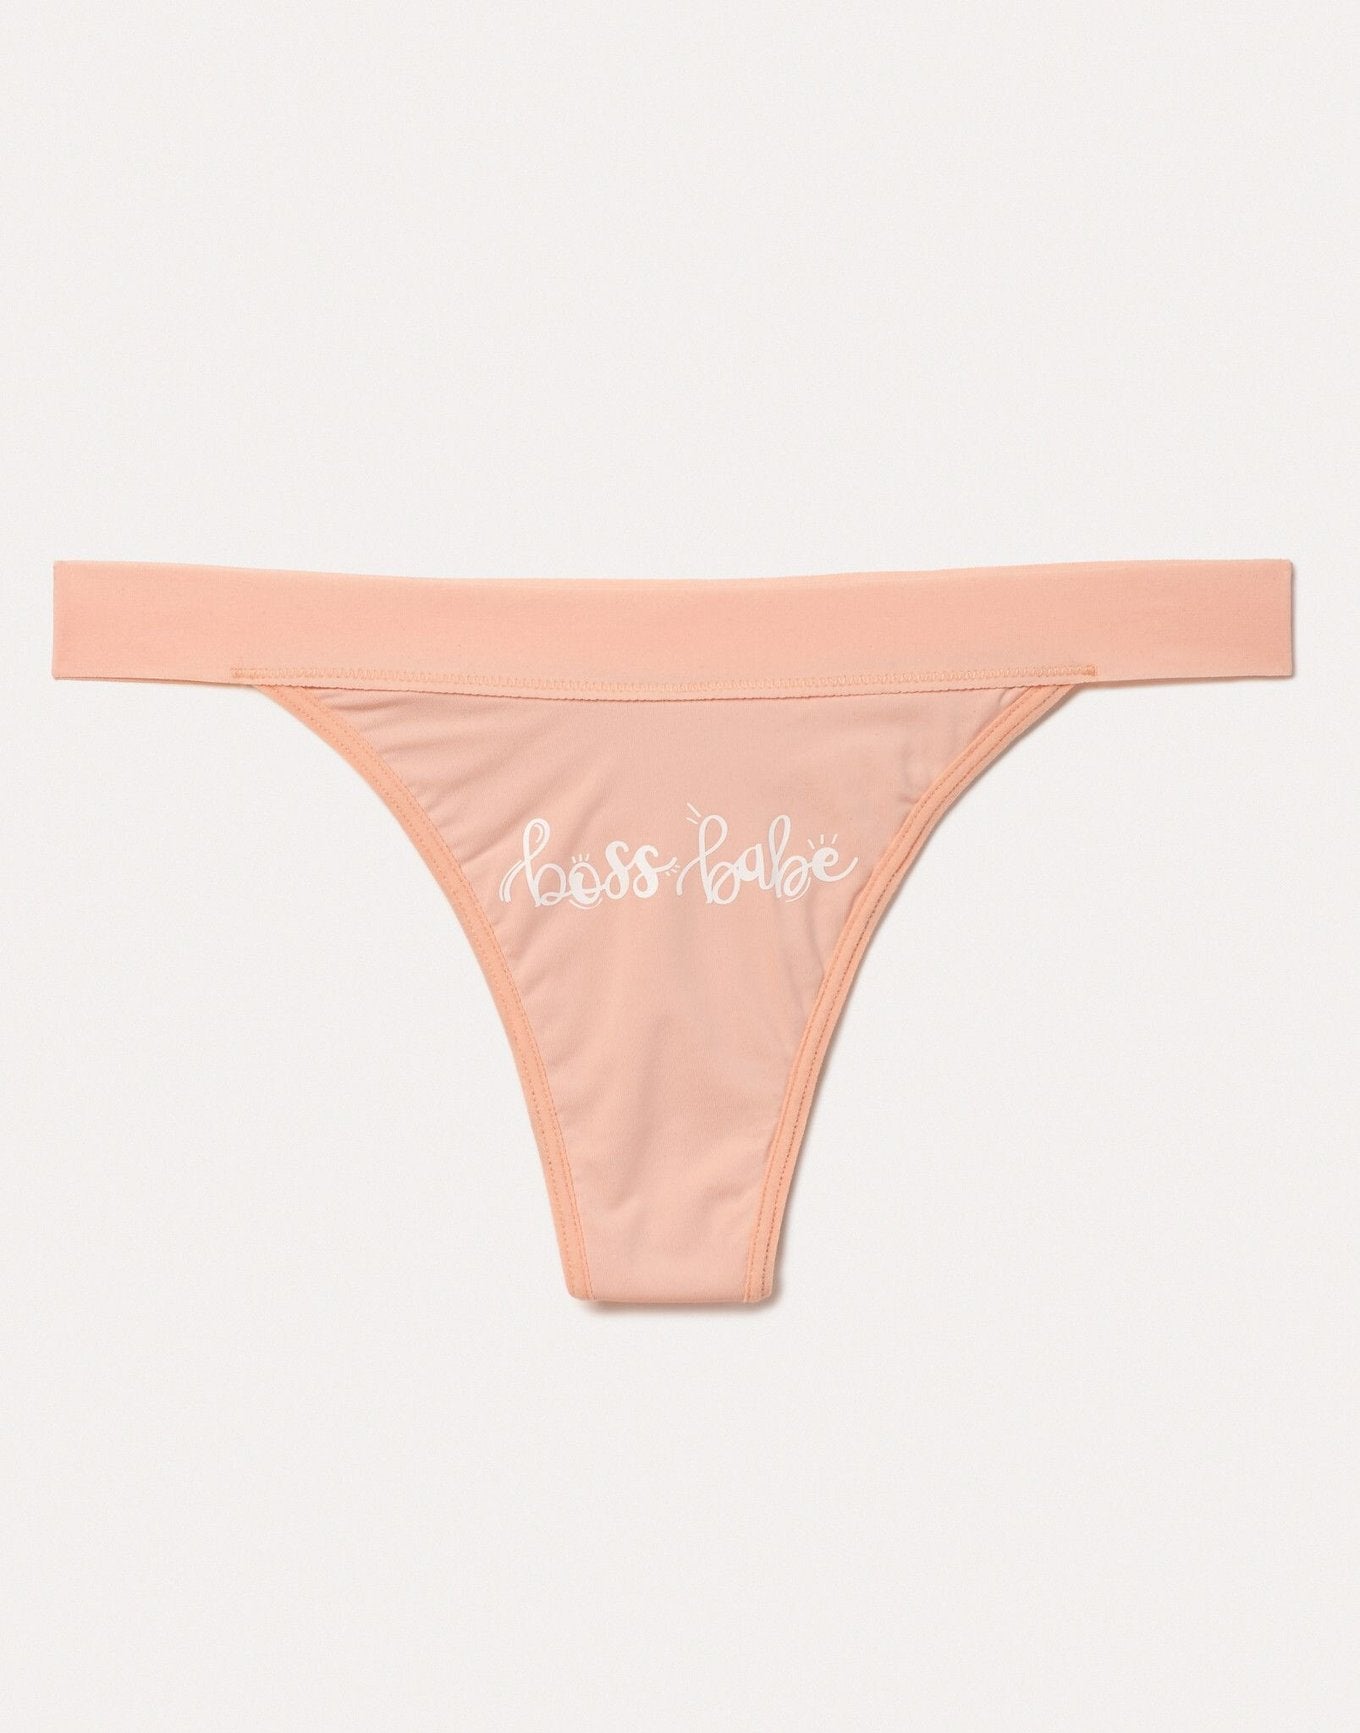 Leah period-proof panty Boss Babe | Joyja